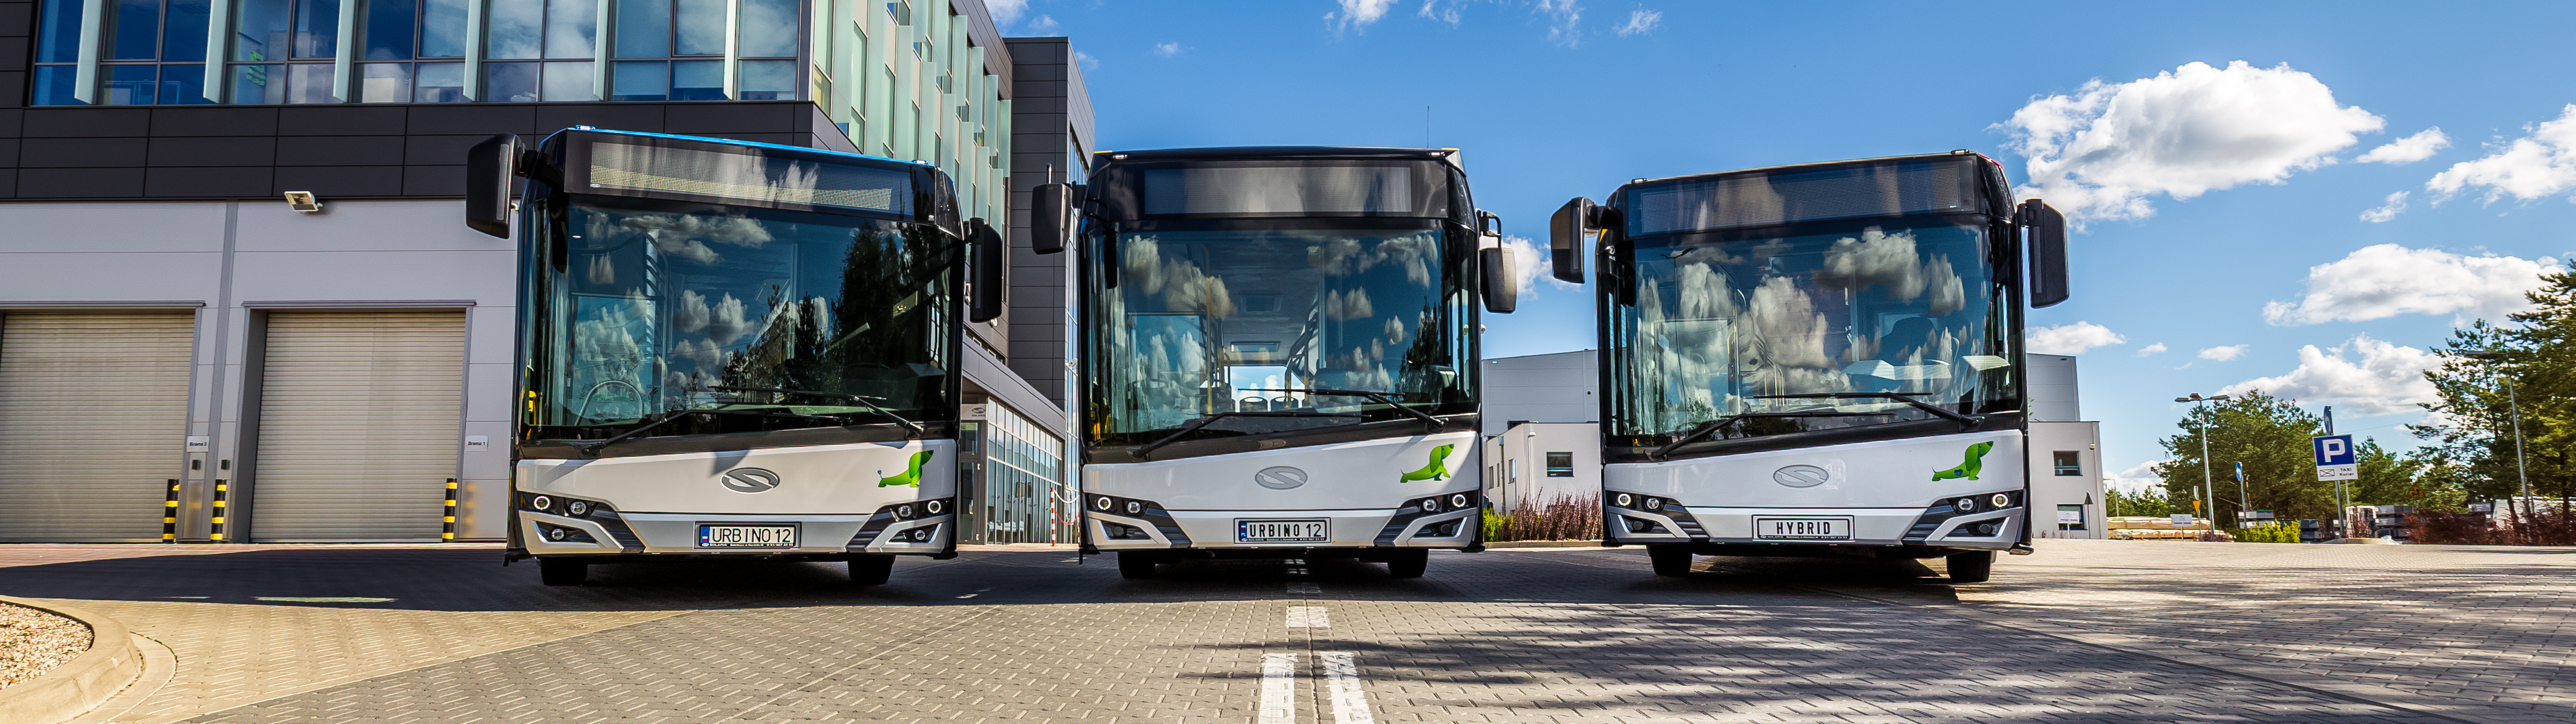 Transexpo Kielce 2018:  Solaris prezentuje trzy autobusy